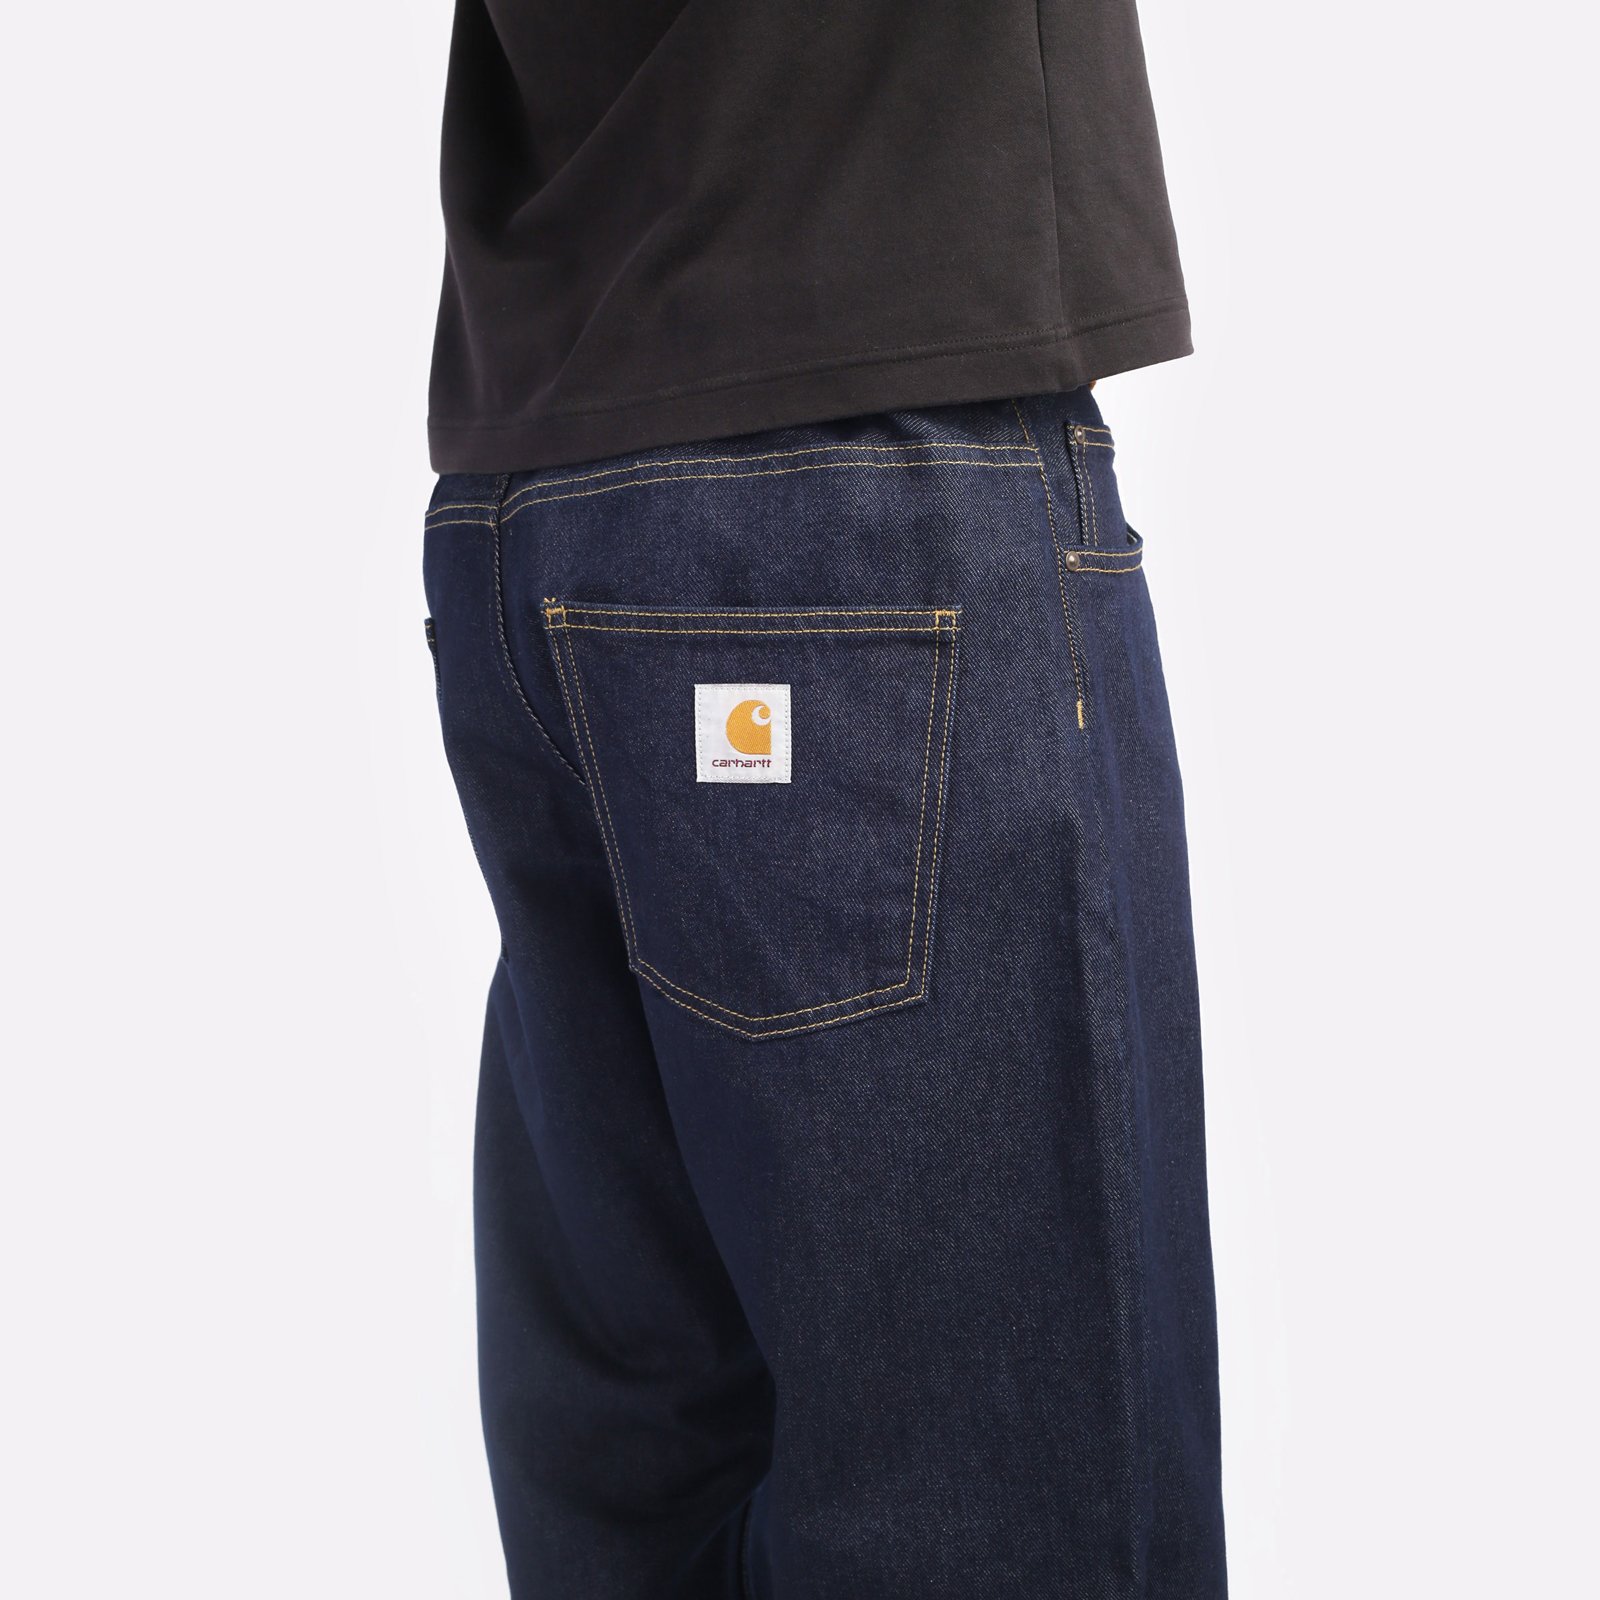 мужские синие брюки Carhartt WIP Maitland I029208-blue - цена, описание, фото 4